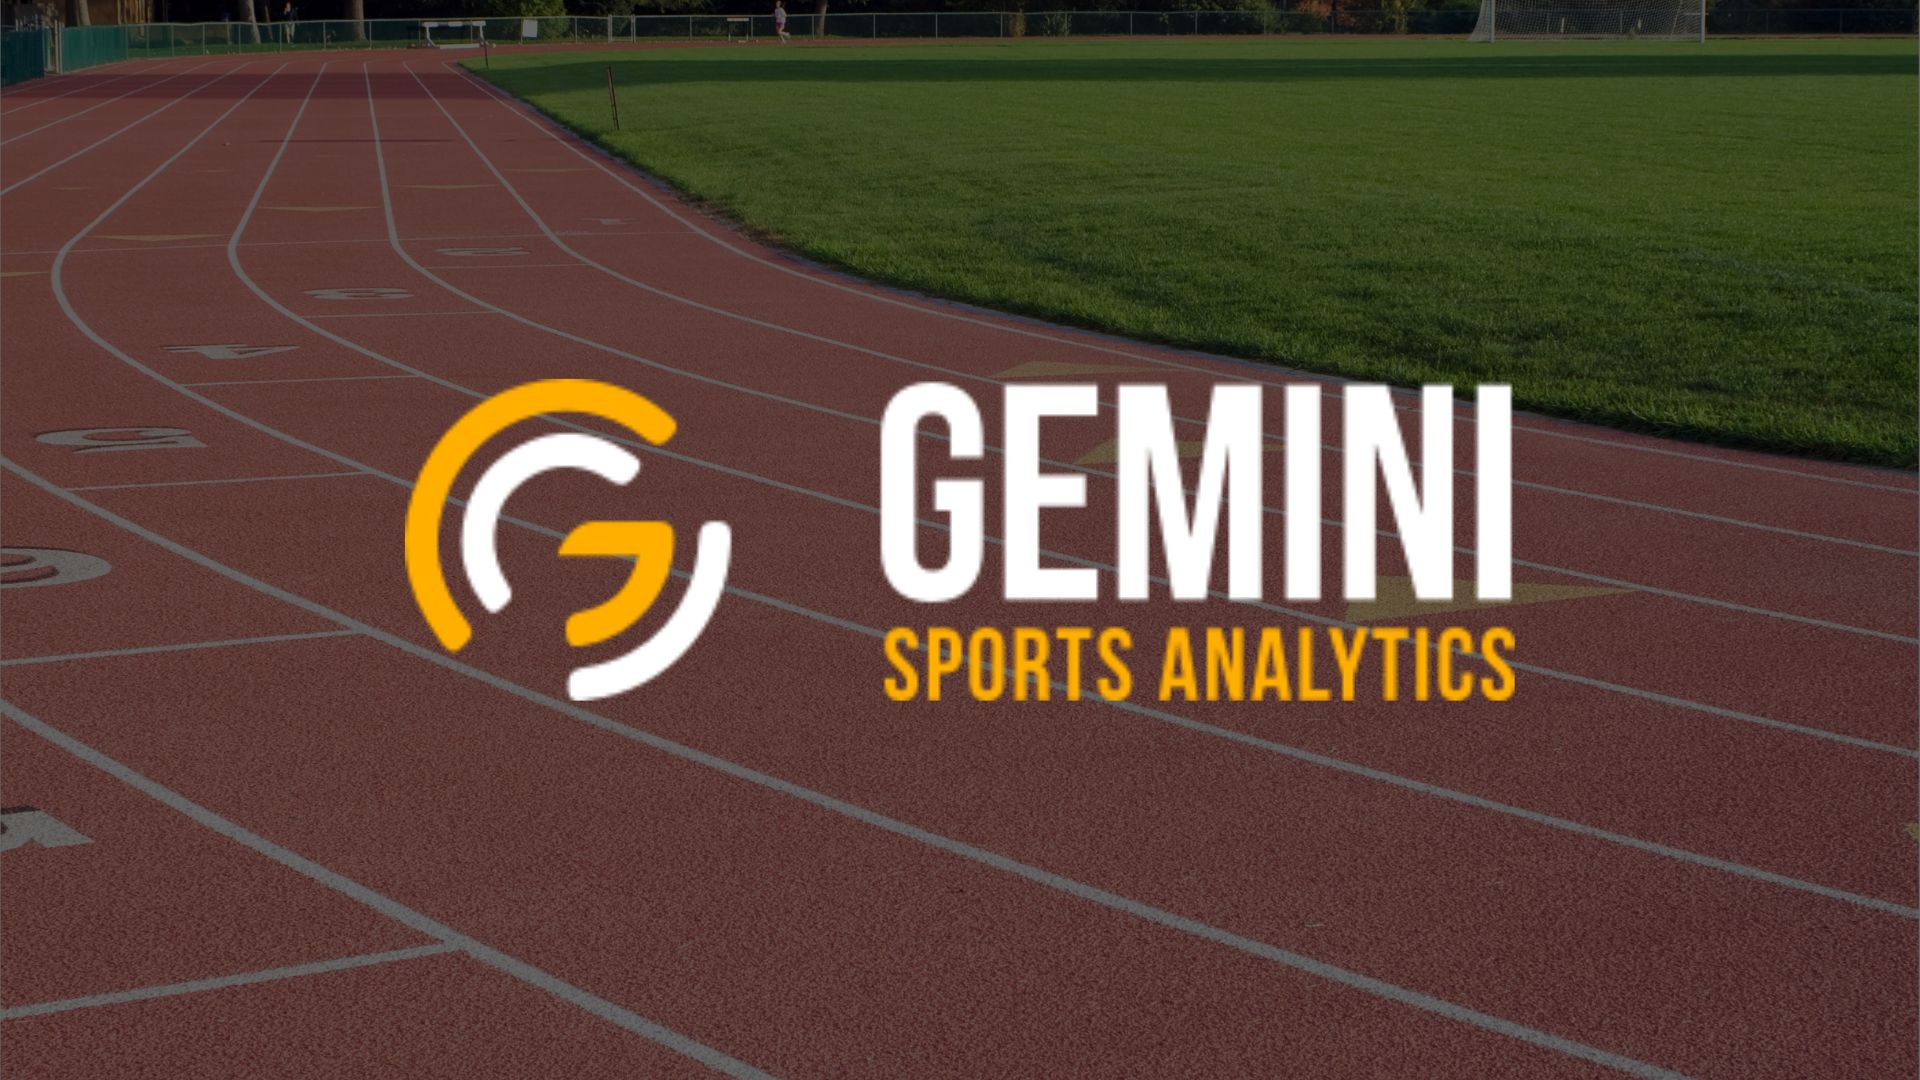 gemini sports analytics funding